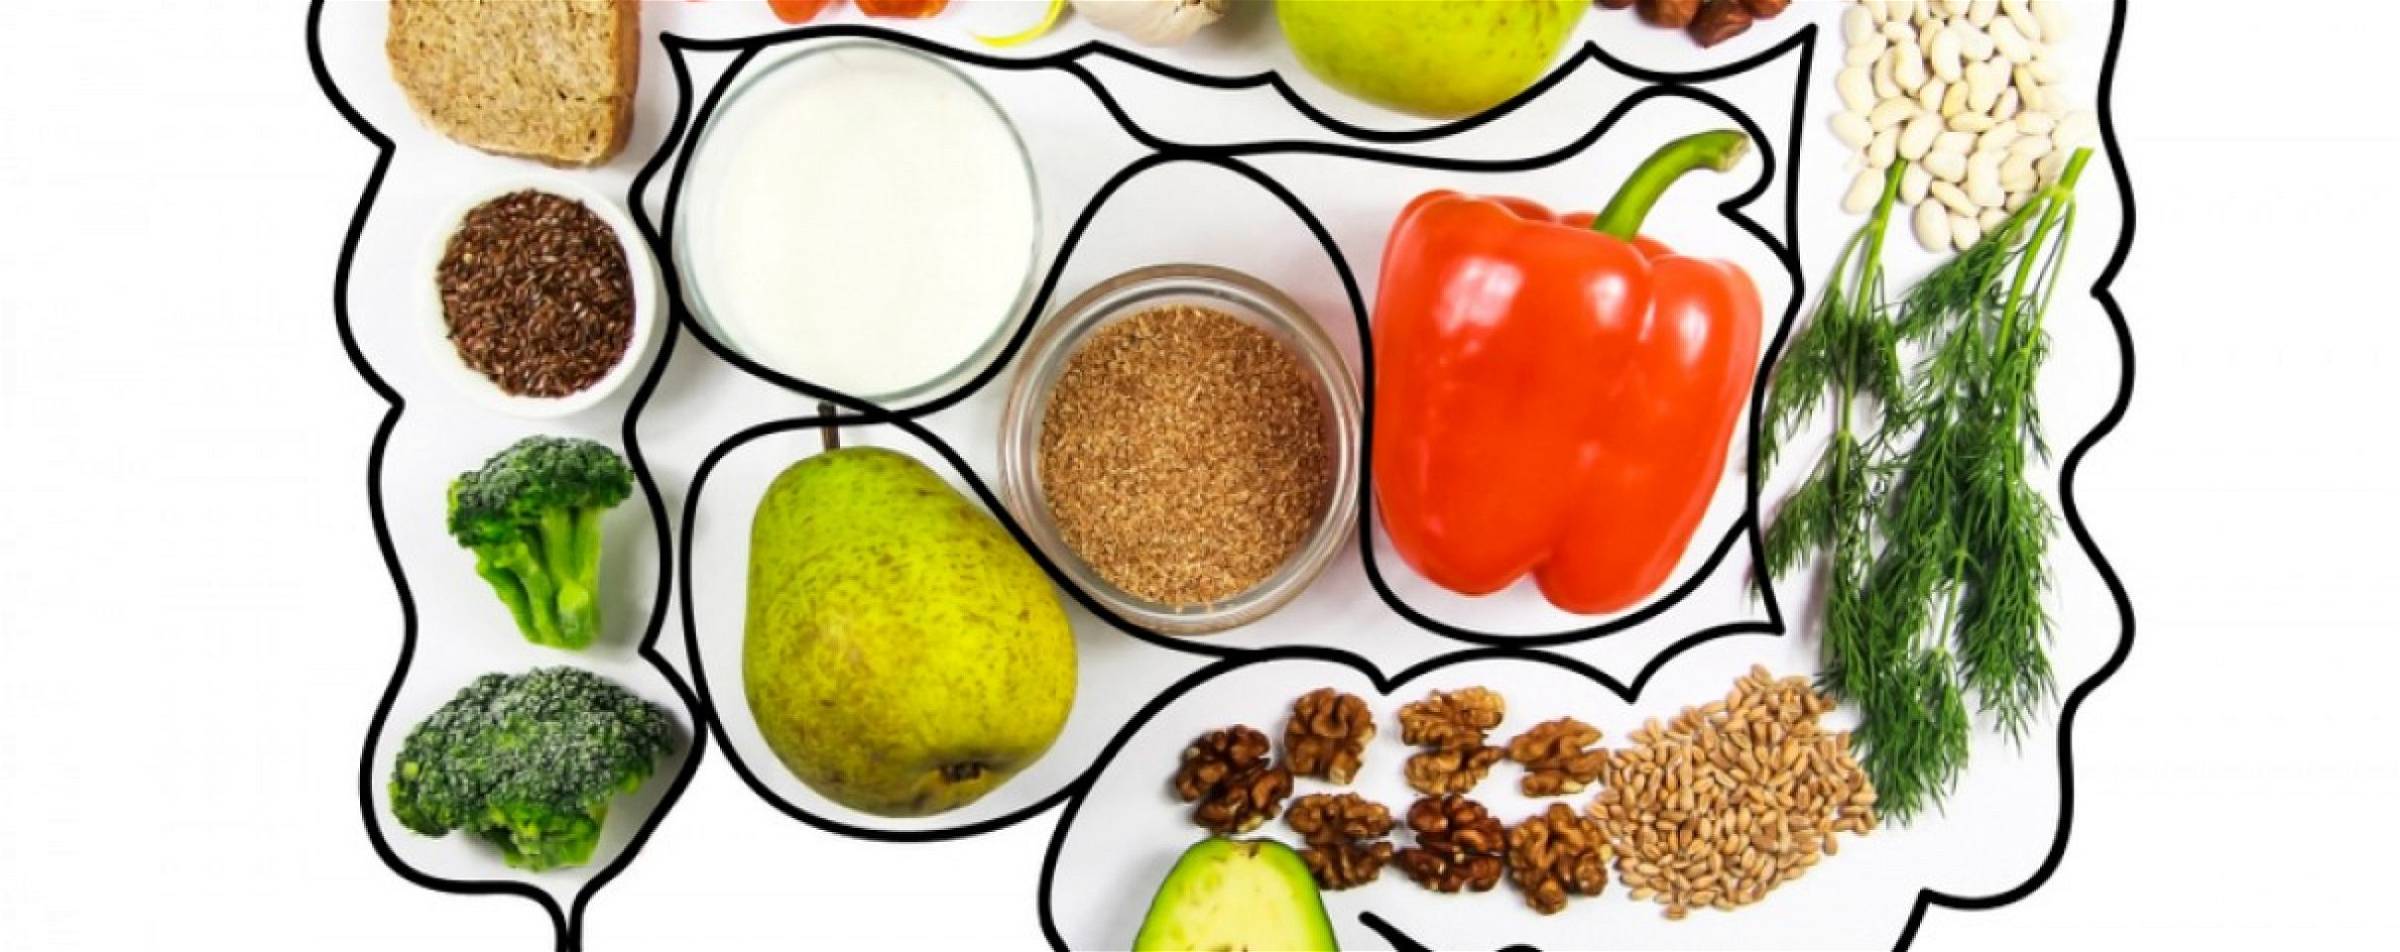 Met deze supplementen, groente, vezels en voeding kan je je spijsvertering verbeteren.